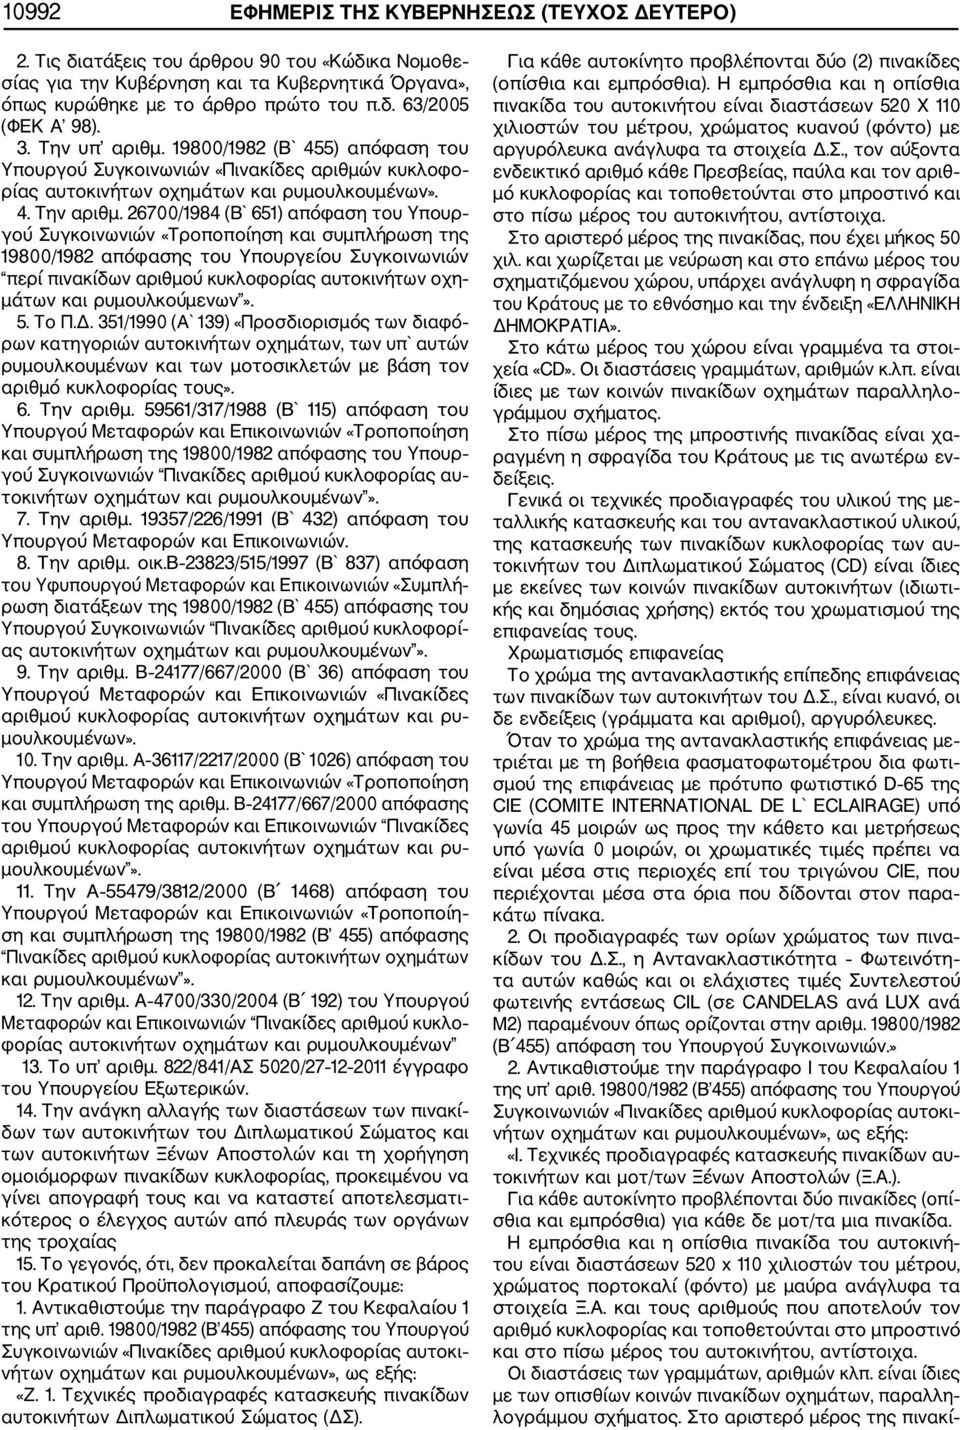 26700/1984 (Β` 651) απόφαση του Υπουρ γού Συγκοινωνιών «Τροποποίηση και συμπλήρωση της 19800/1982 απόφασης του Υπουργείου Συγκοινωνιών περί πινακίδων αριθμού κυκλοφορίας αυτοκινήτων οχη μάτων και